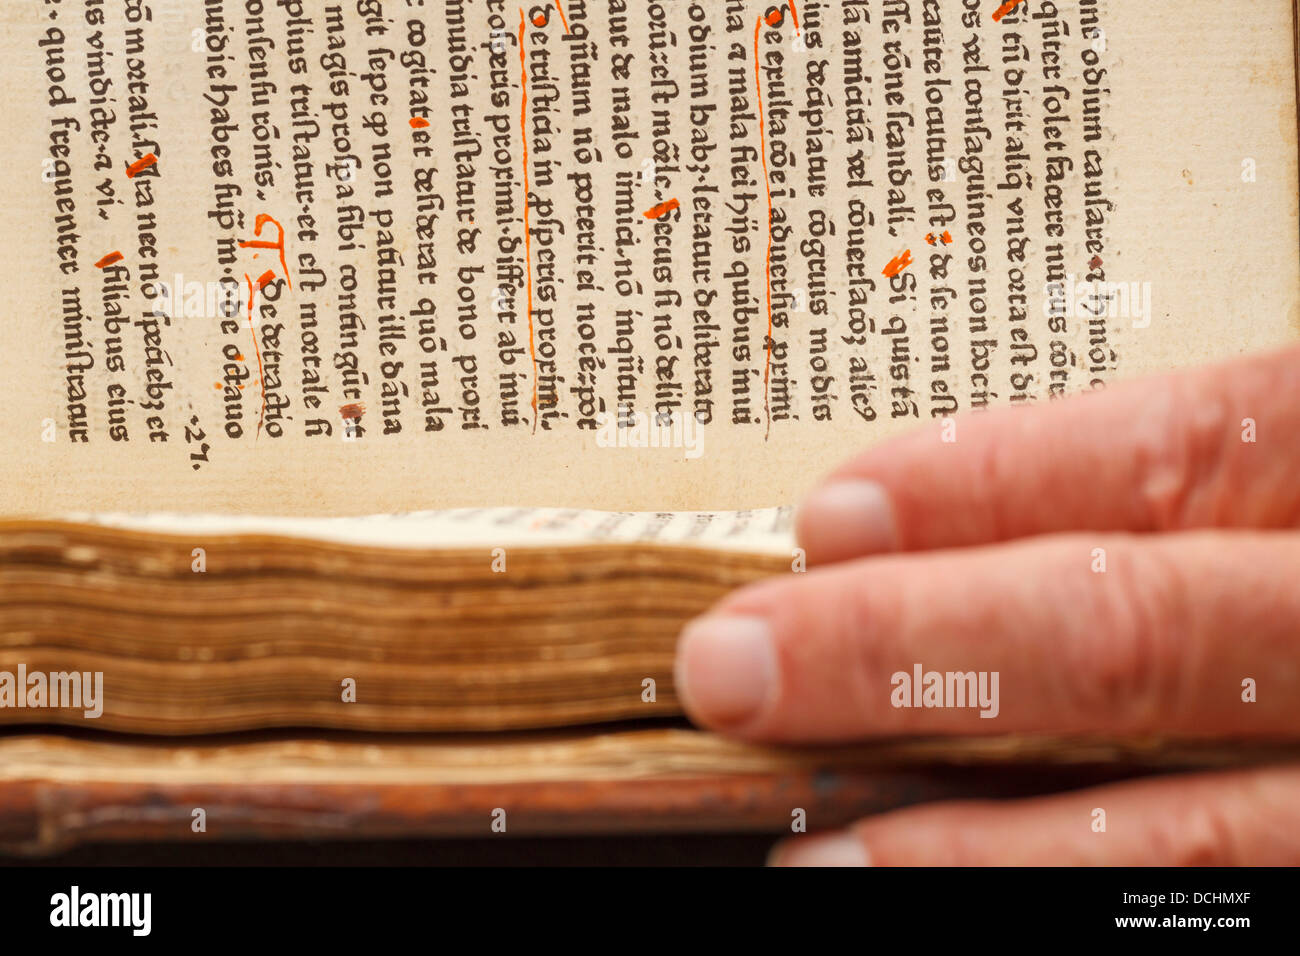 Un vieux manuscrit de livres anciens incunables bible incunabulum imprimer impression bloc Cover en cuir imprimé peau de chèvre hyde masquer Banque D'Images